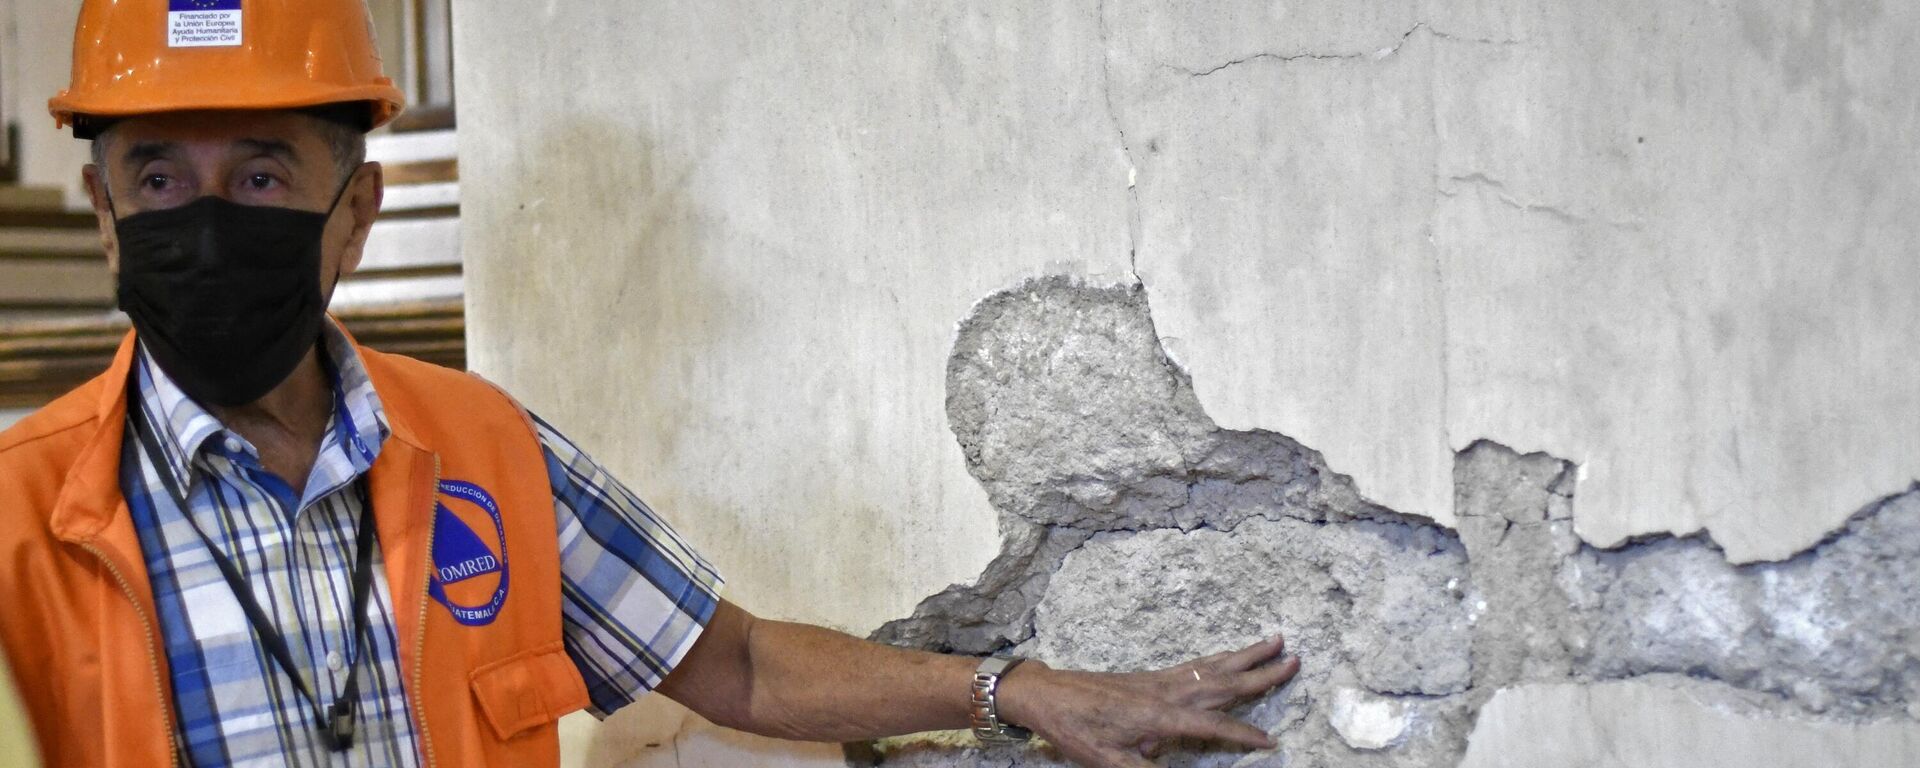 أحد أعضاء منسق الحد من الكوارث يظهر جدارًا متضررًا في كنيسة سان خوان أوبيسبو، في أعقاب الزلزال الذي ضرب المنطقة 6.2 درجة في أماتيتلان، على بعد 35 كيلومترًا جنوب مدينة غواتيمالا، في 16 فبراير 2022.  زلزال بقوة 6.2 درجة ضربت منطقة غرب جواتيمالا في ساعة مبكرة من صباح ذلك اليوم، بحسب هيئة المسح الجيولوجي الأمريكية، على الرغم من عدم الإبلاغ عن وقوع إصابات حتى الآن. - سبوتنيك عربي, 1920, 17.02.2023